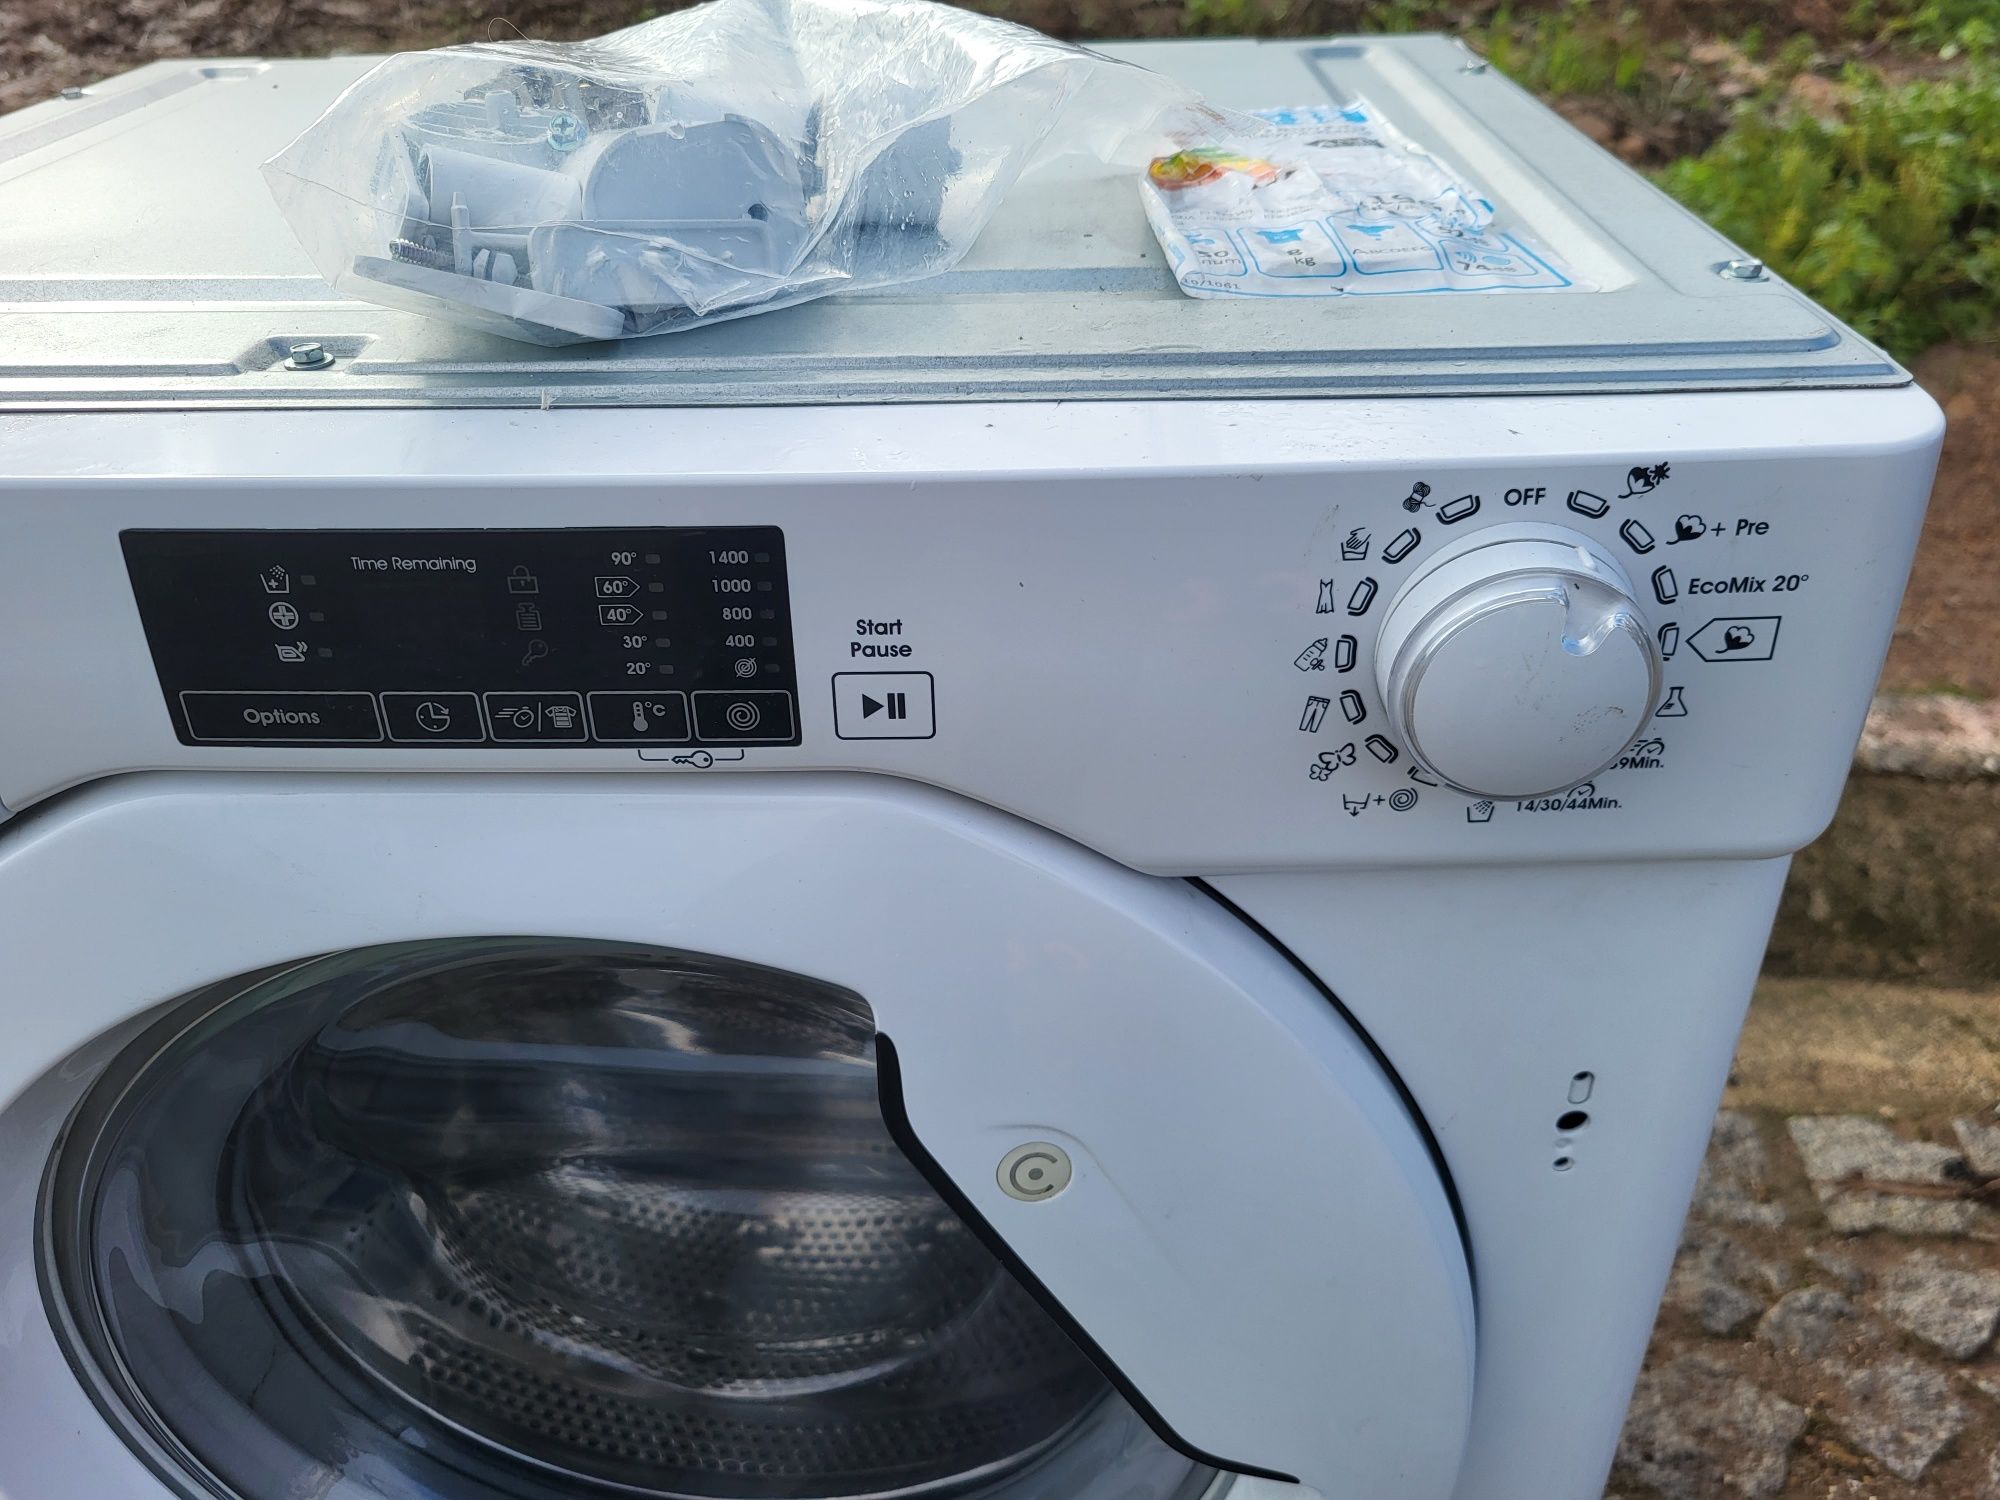 Máquina lavar roupa de encastre Candy 8 kg 1400 rotações classe AAA